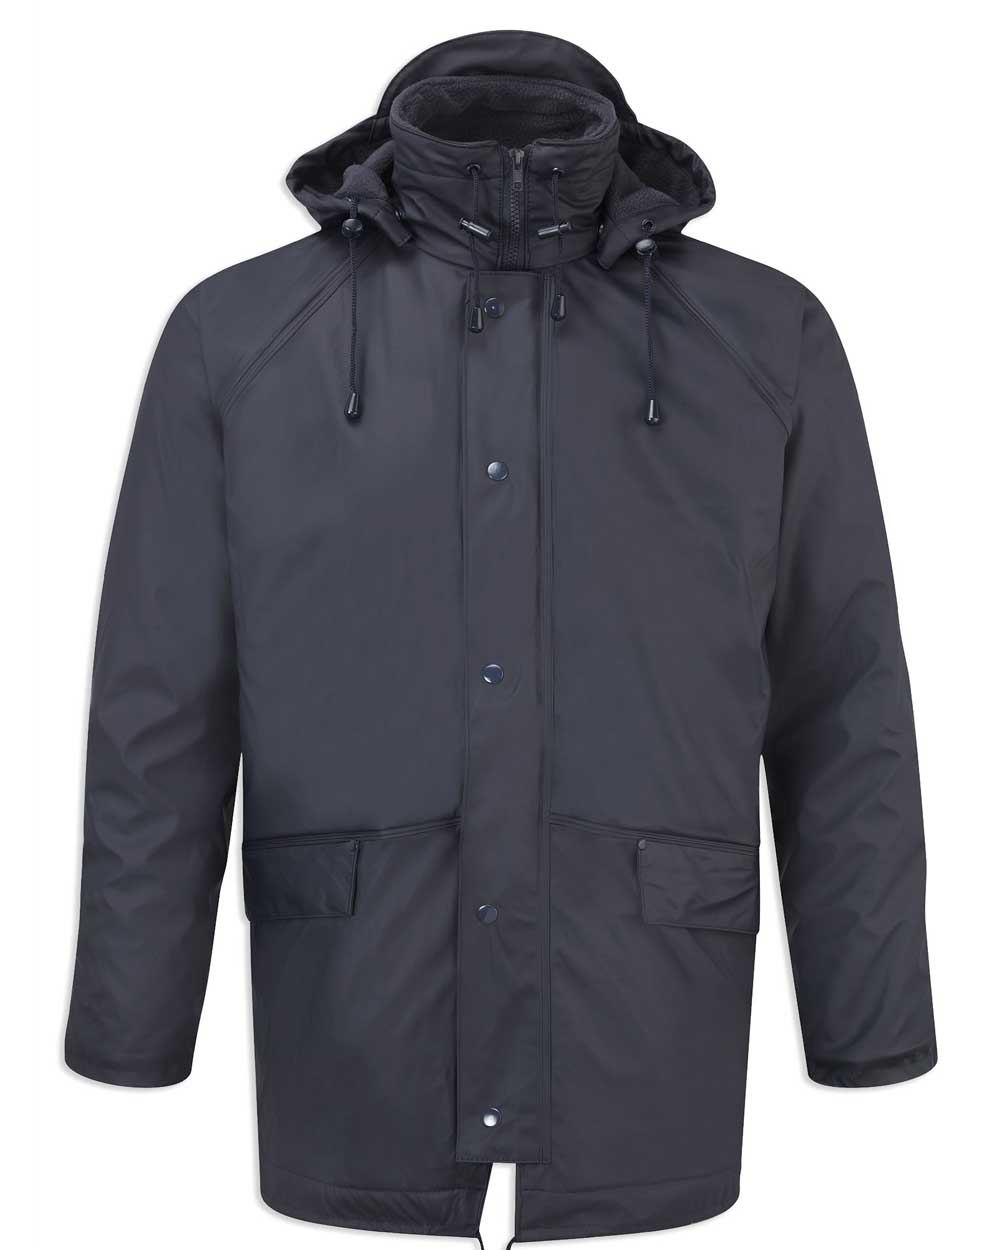 Navy waterproof FLEX Fleece Lined waterproof jacket Fortexfleece 219 